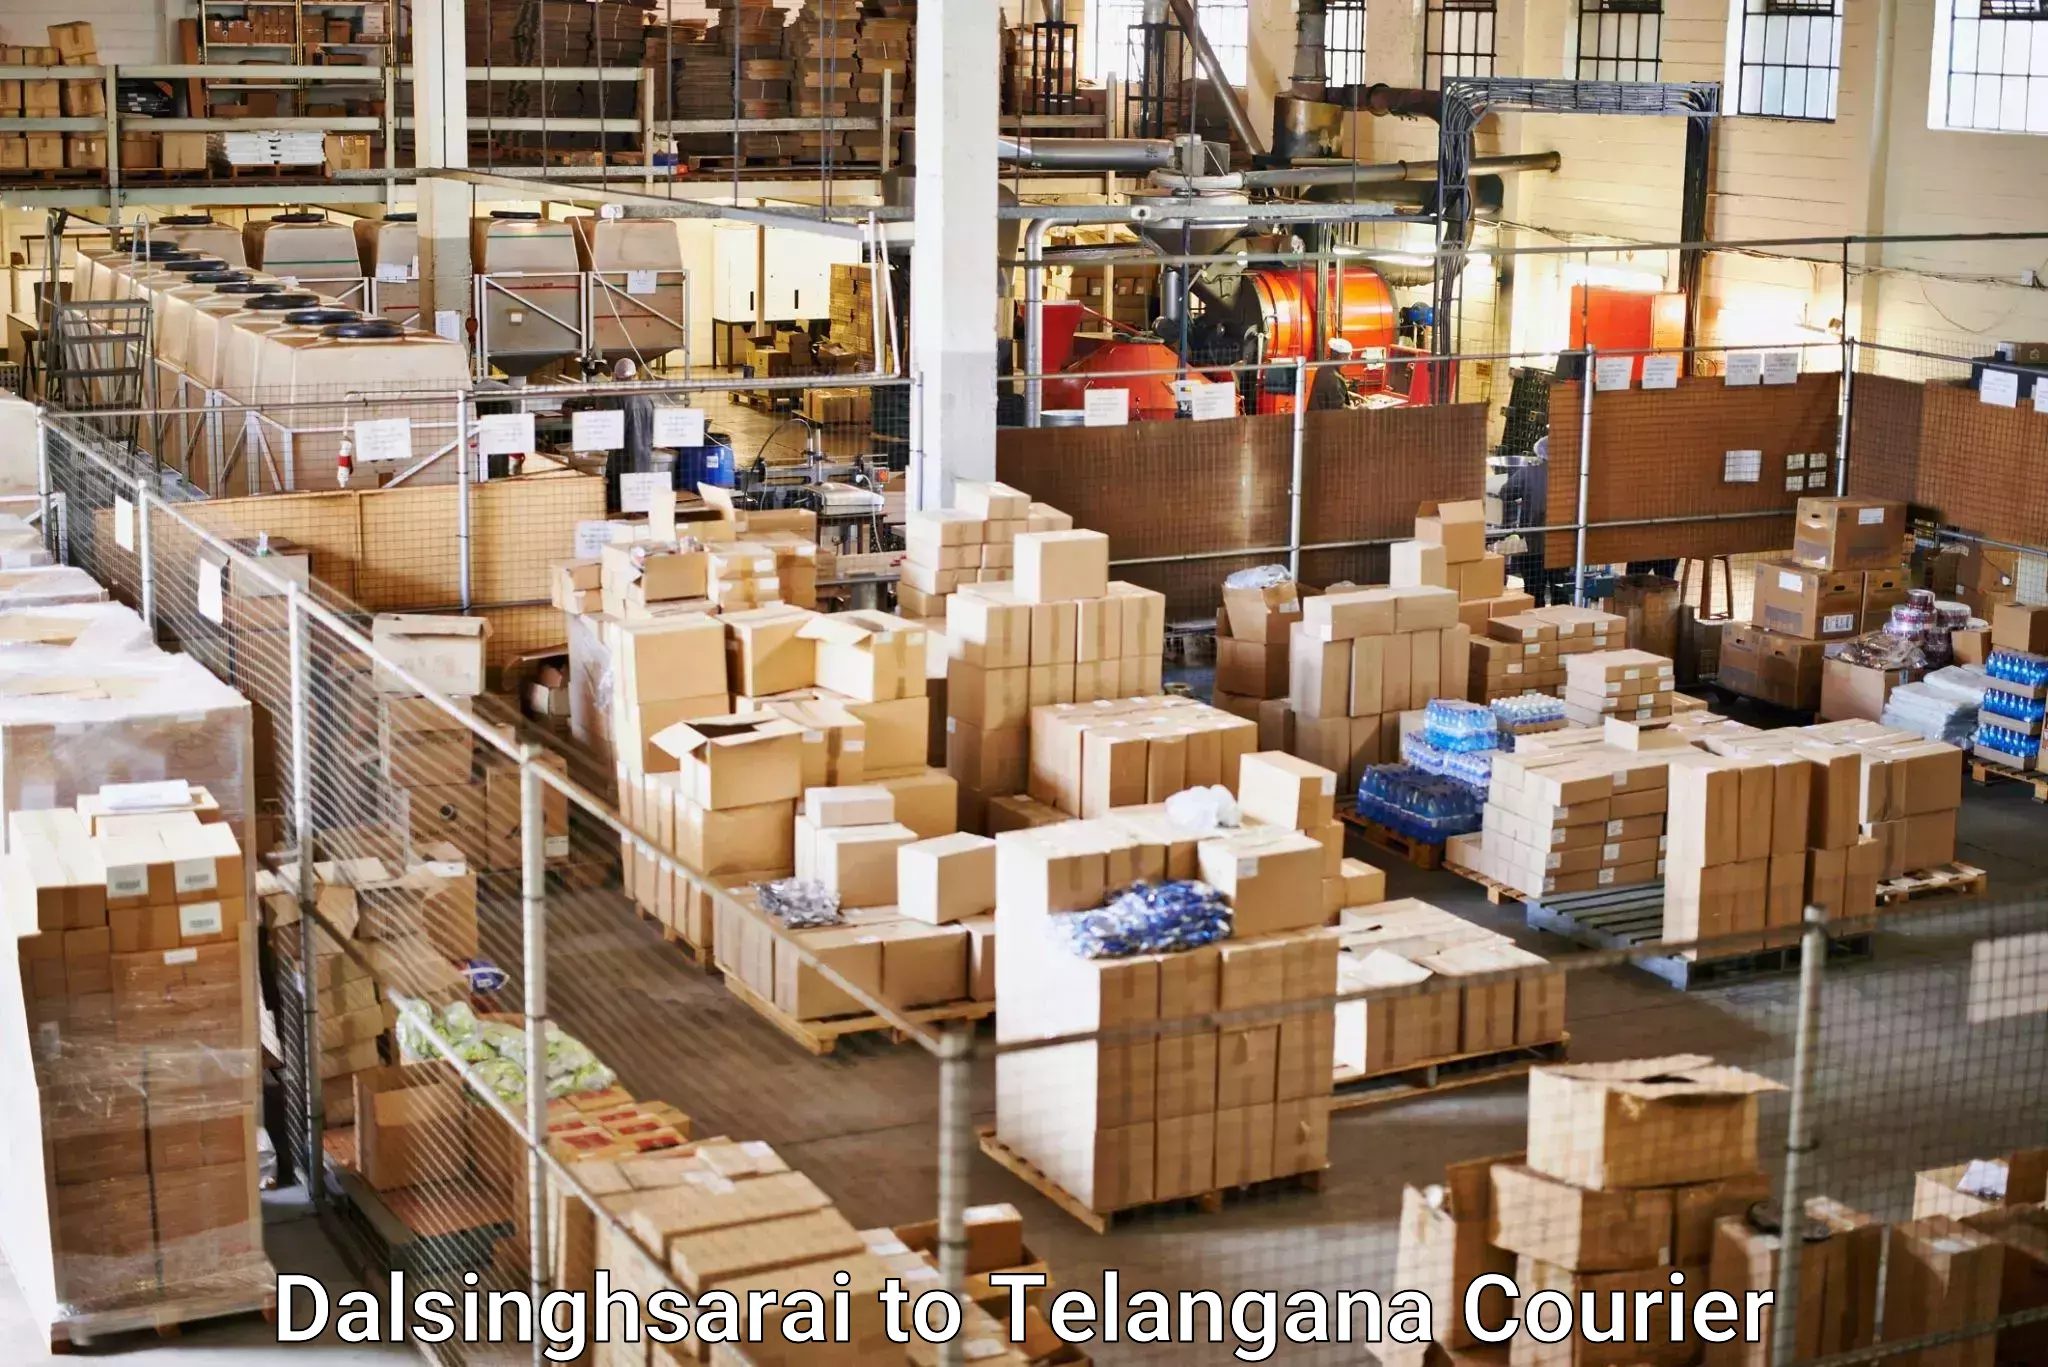 Express logistics providers Dalsinghsarai to Narmetta